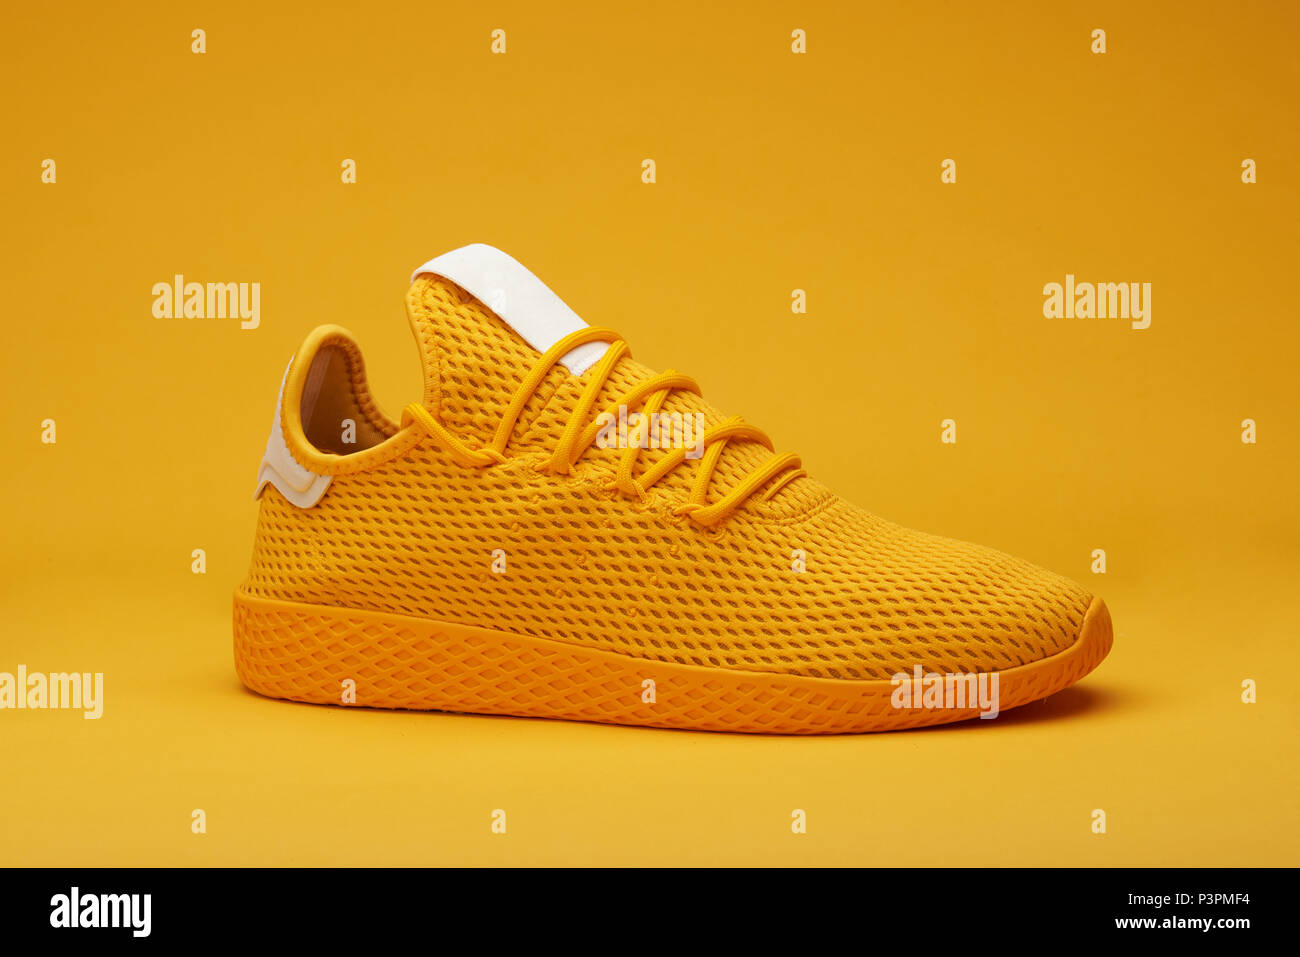 One yellow sport shoe isolated on orange background Stock Photo